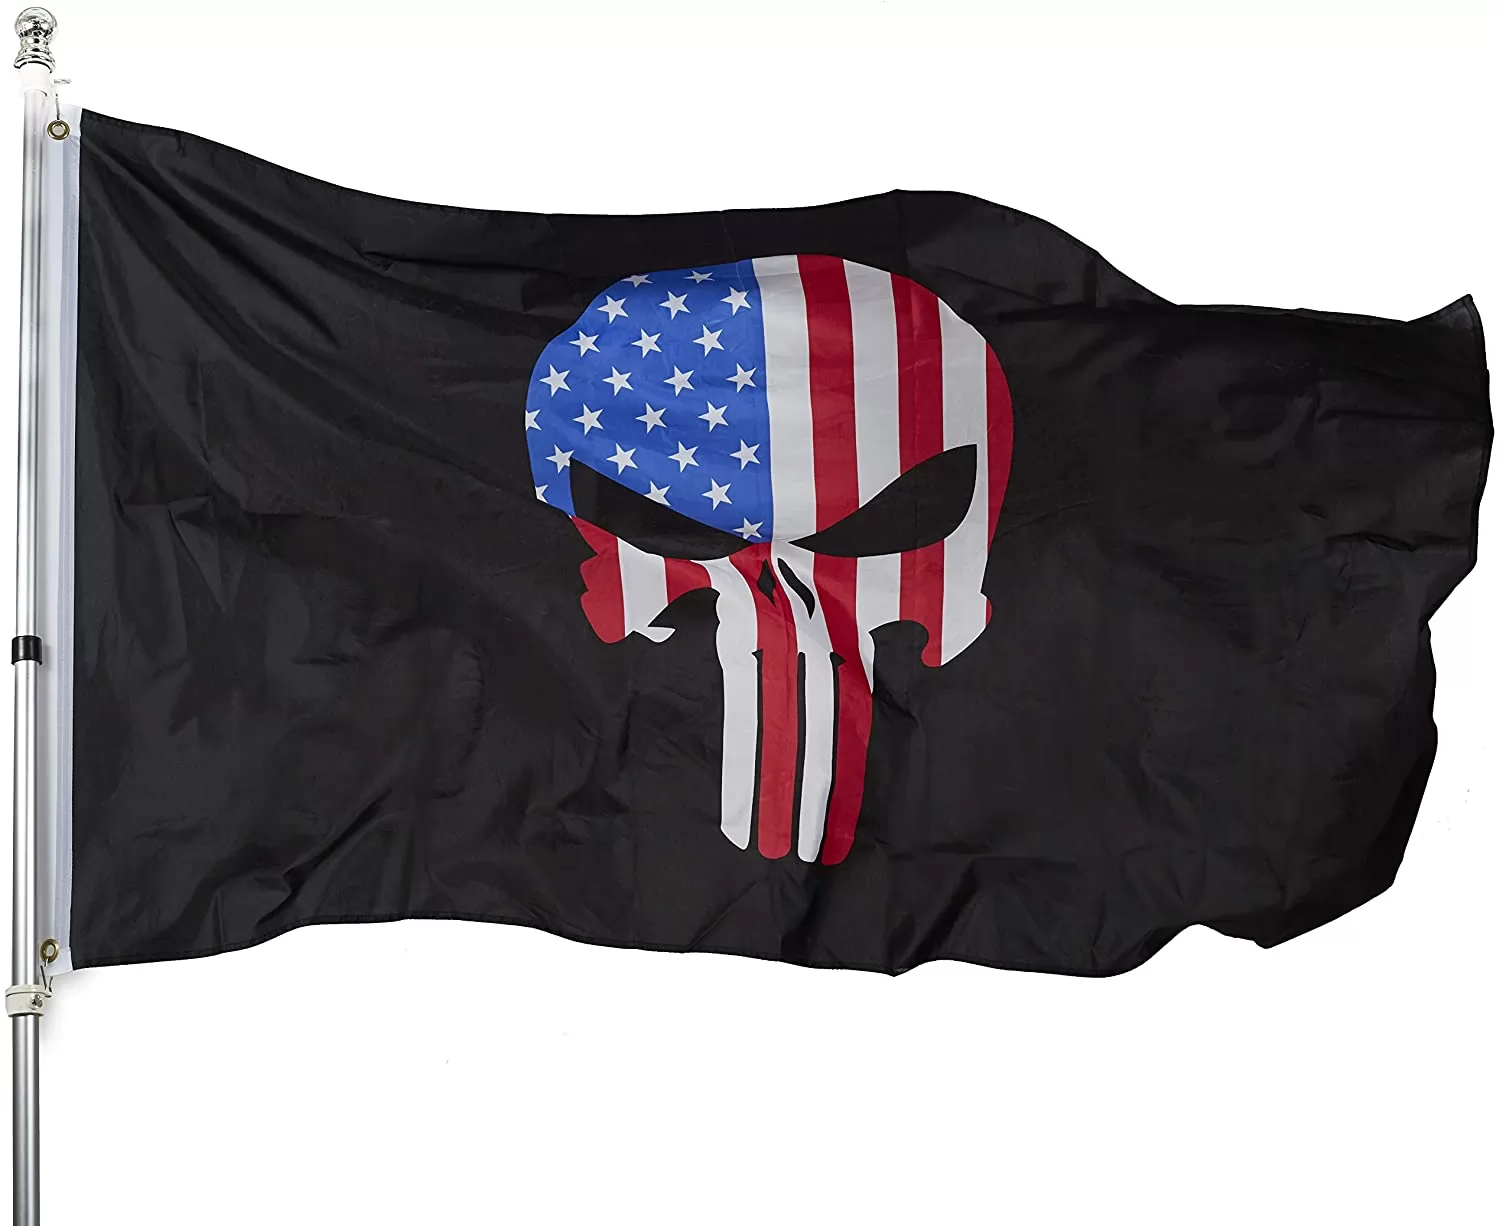 Homissor Punisher Skull Flag 3x5 - Demon Punisher Memorial American Flags - 3x5ft Thin Blue line USA Police Banner